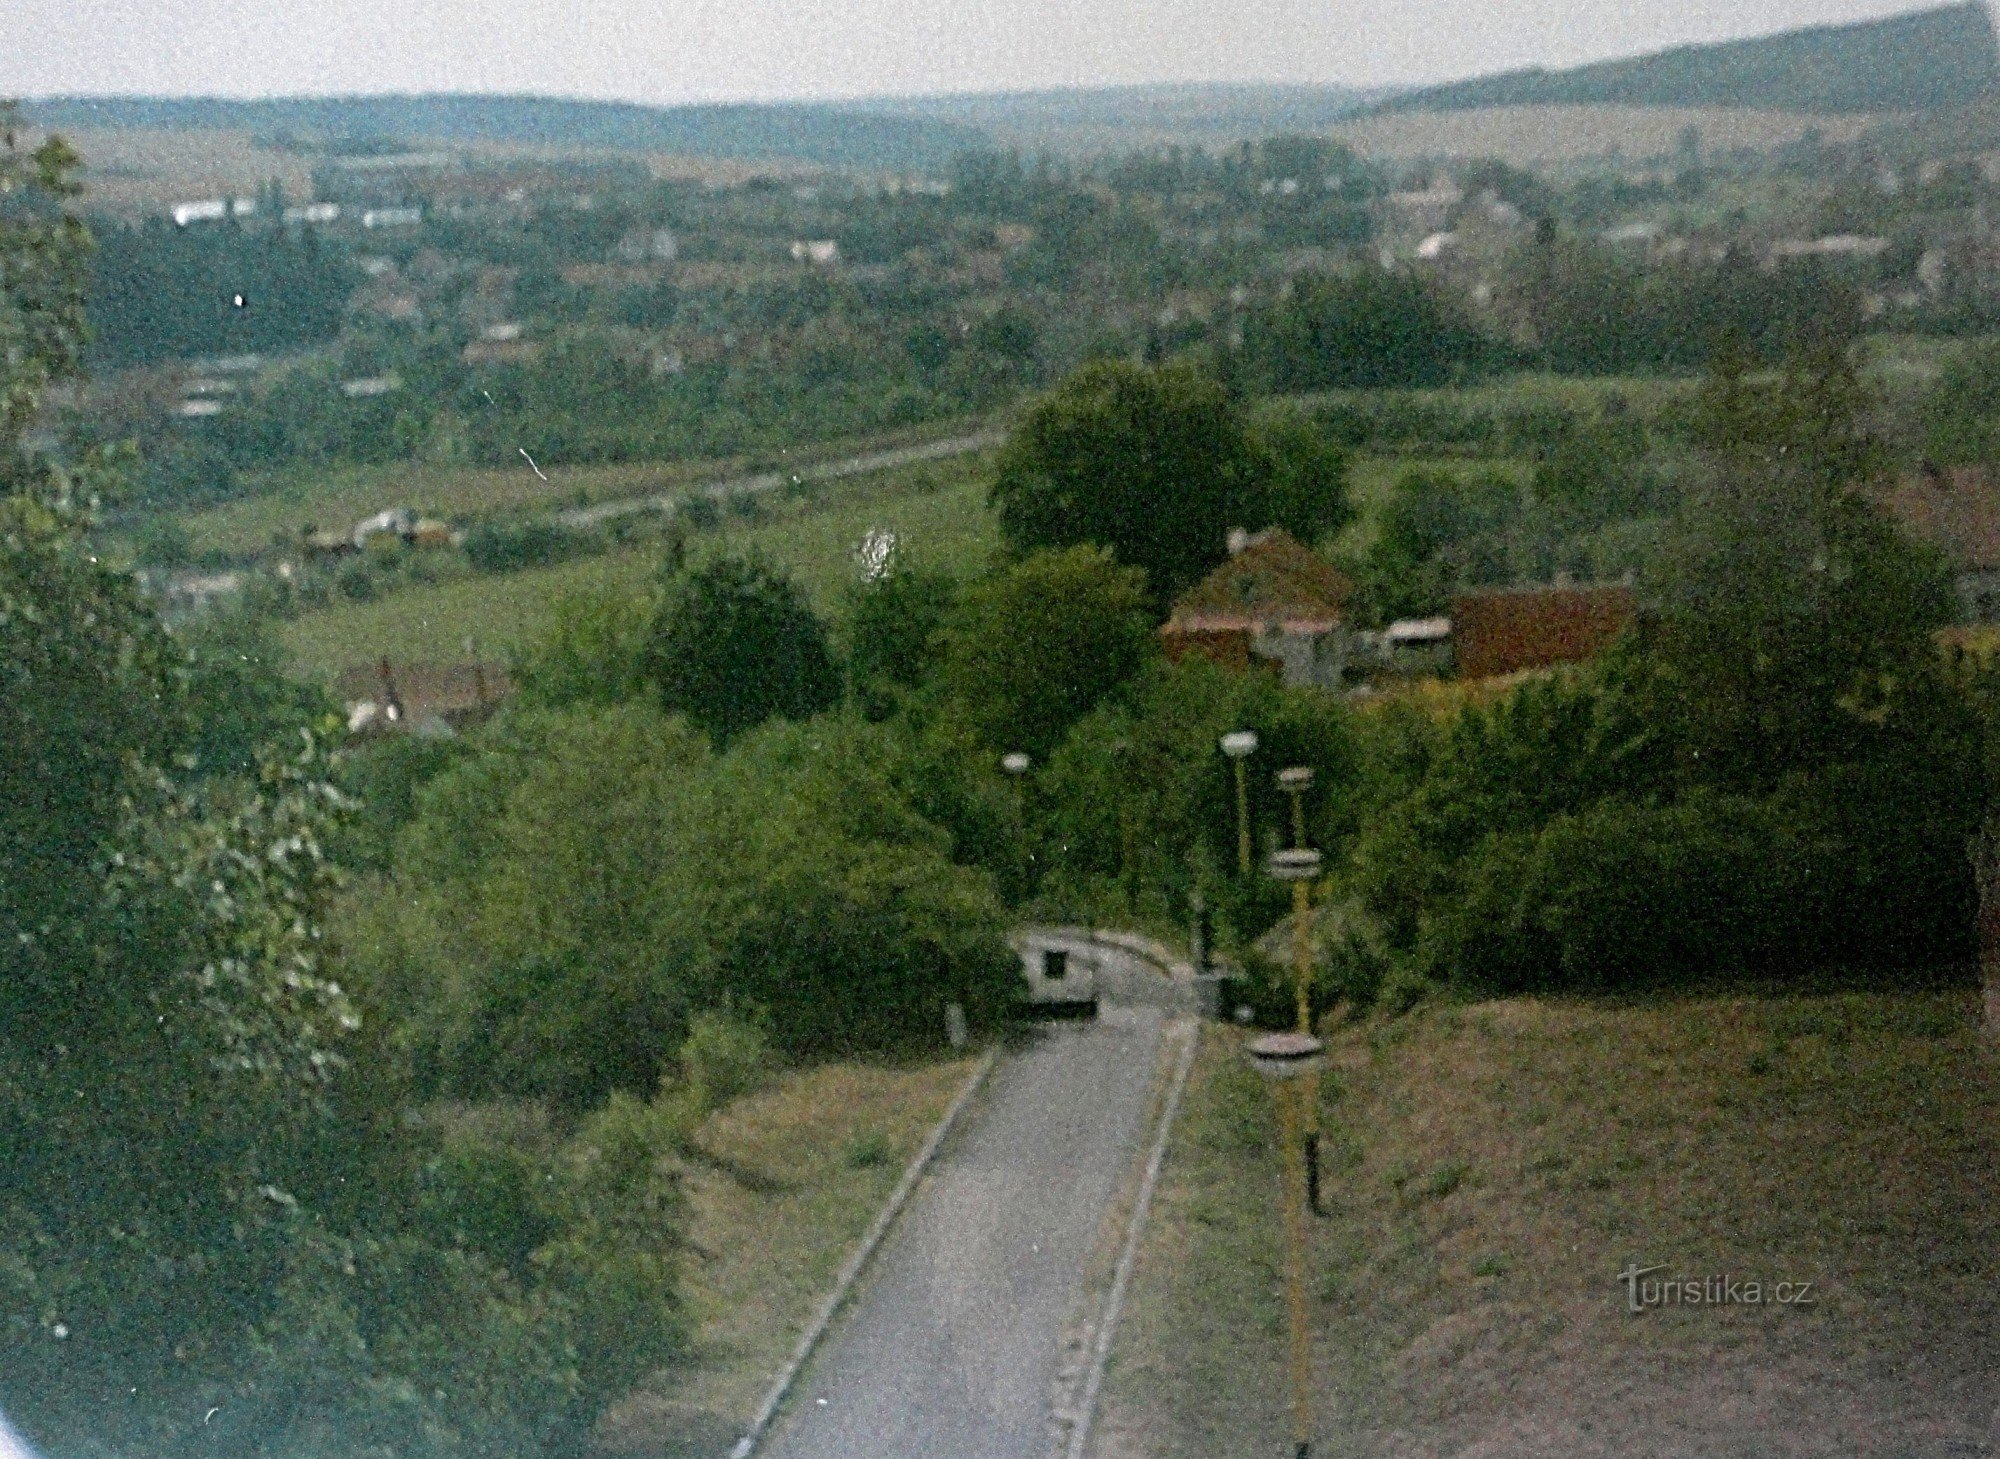 Nové Zámky kod Nesovica, pogled na selo